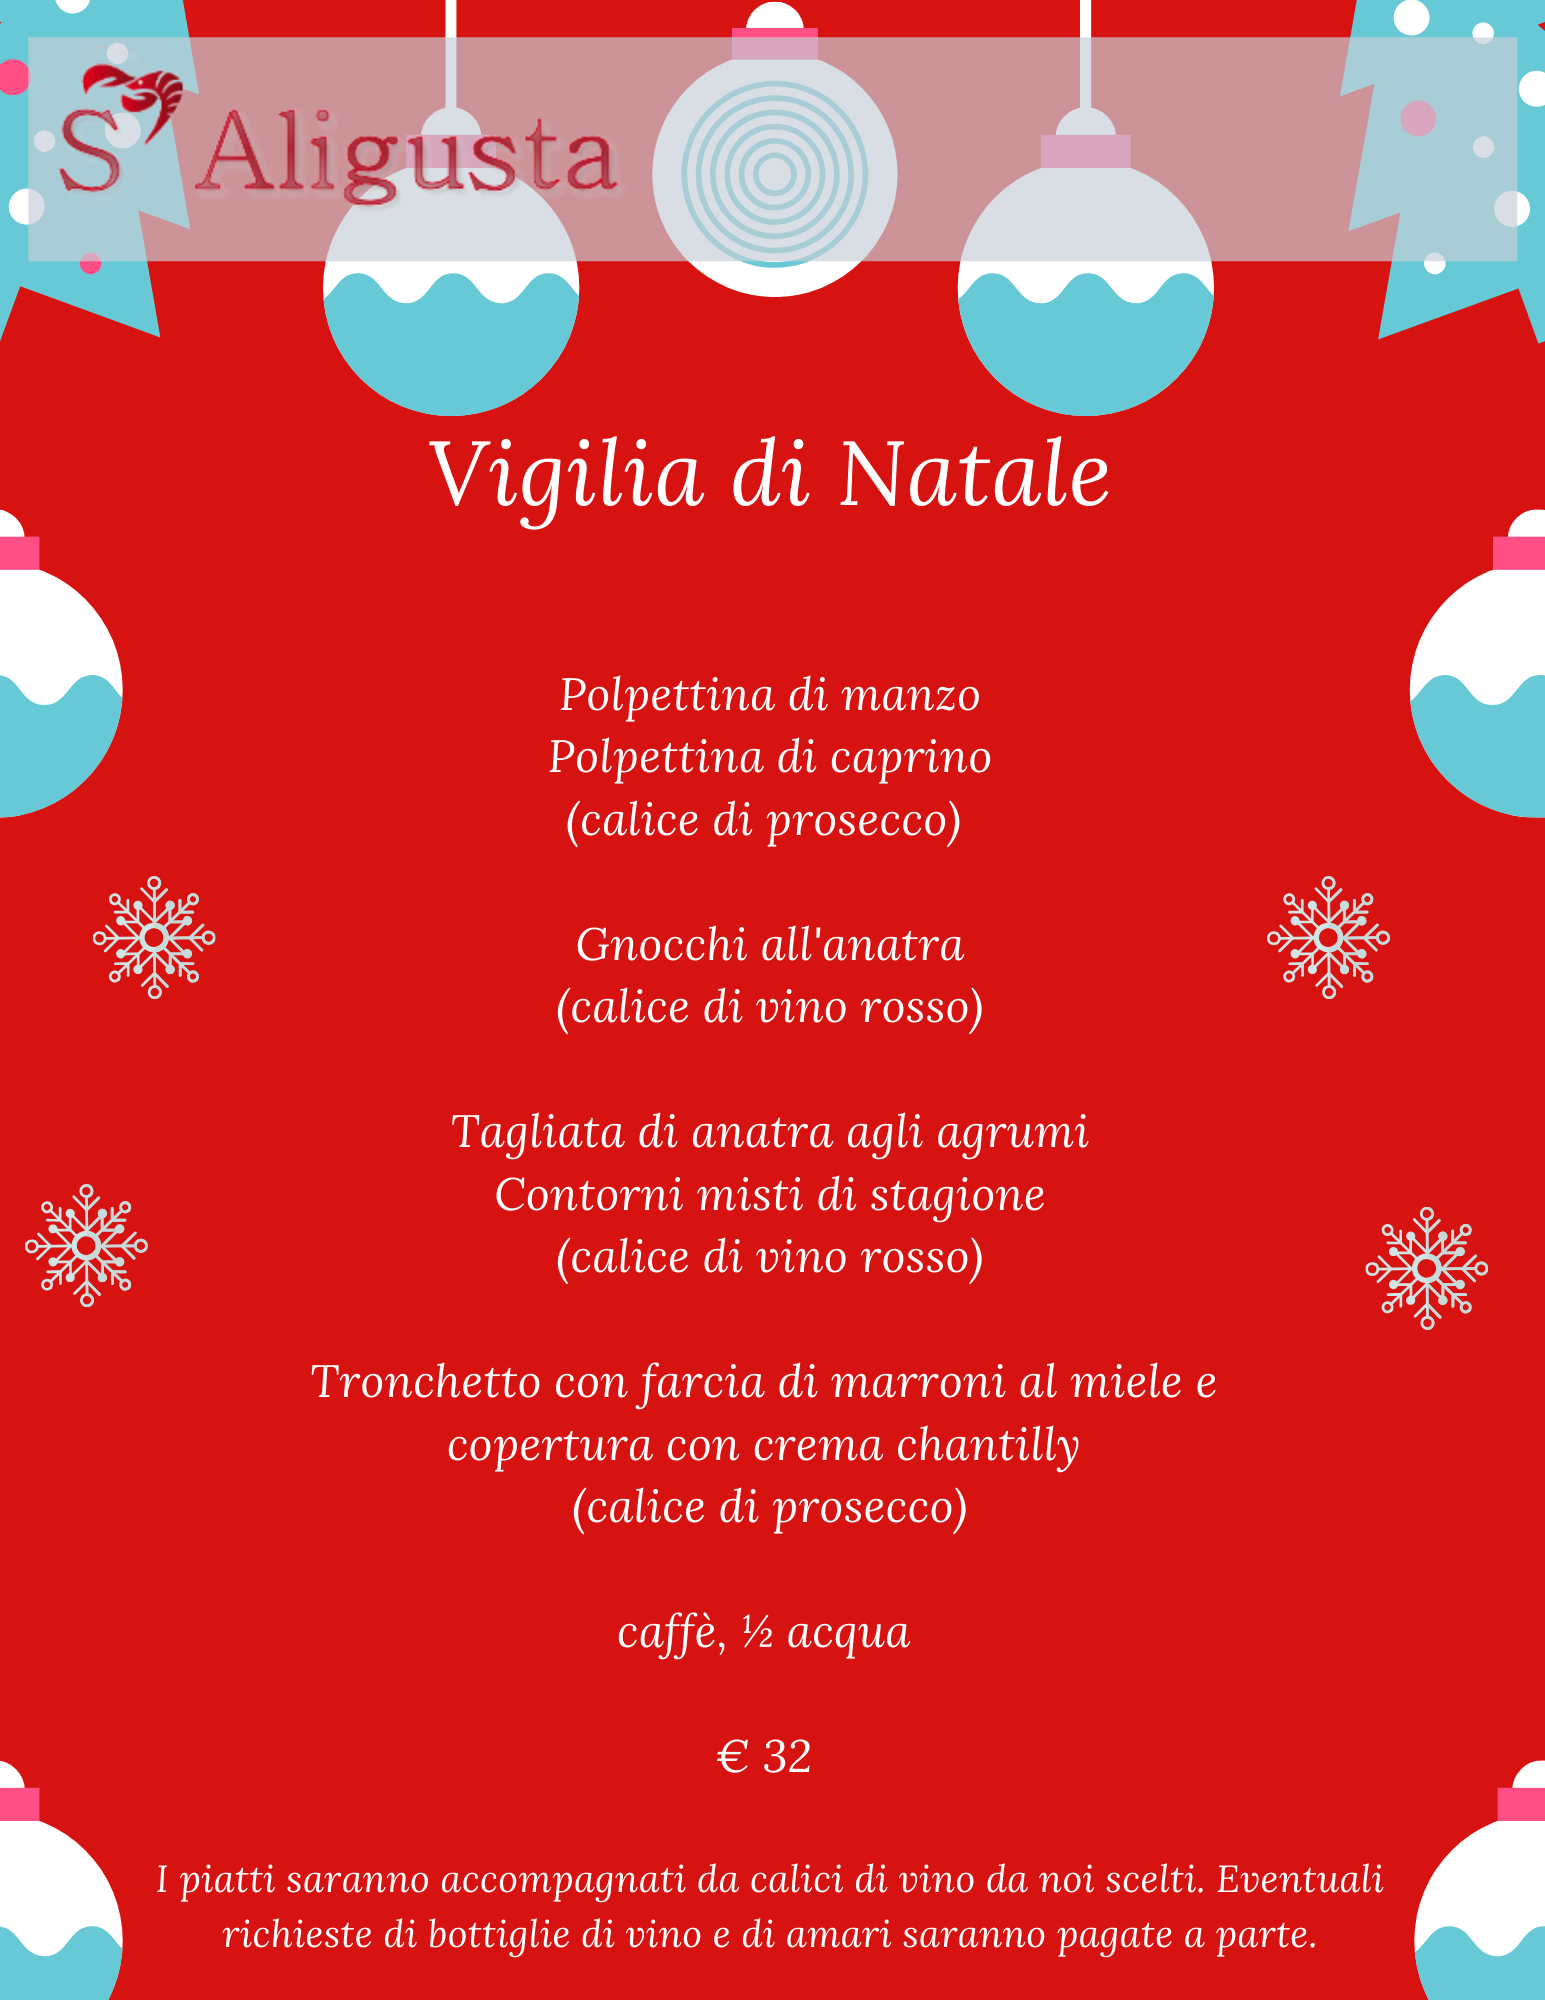 Foto Menu Di Natale.Menu Di Carne Vigilia Di Natale 2019 Ristorante S Aligusta Padova